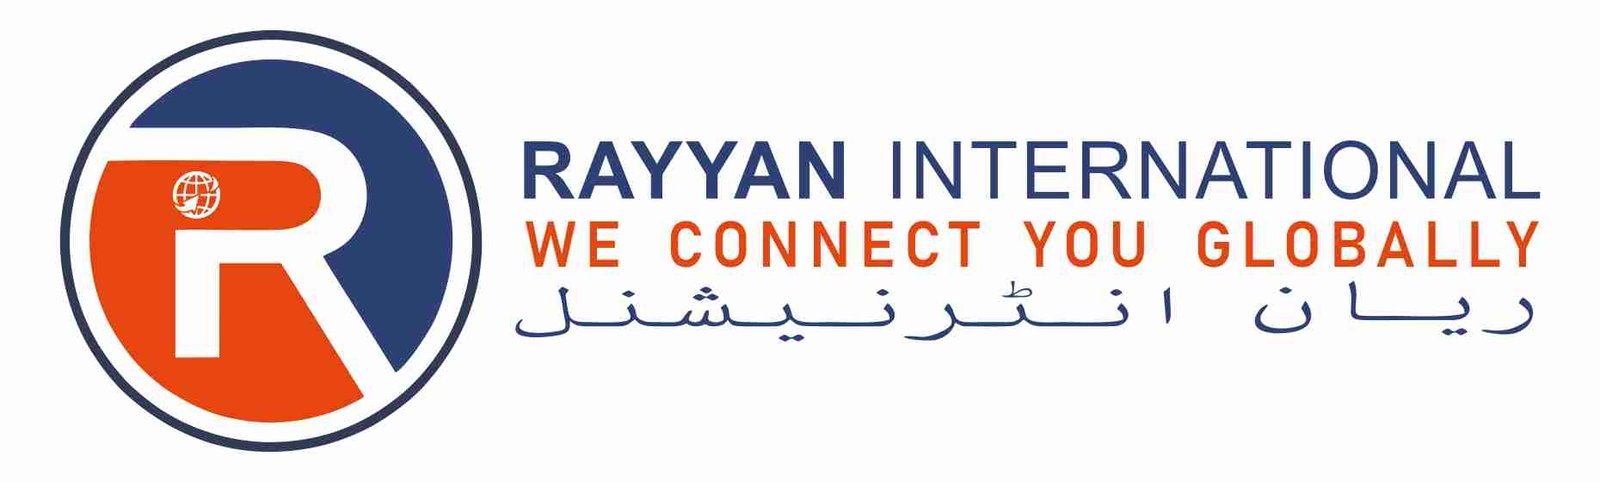 Rayyan International